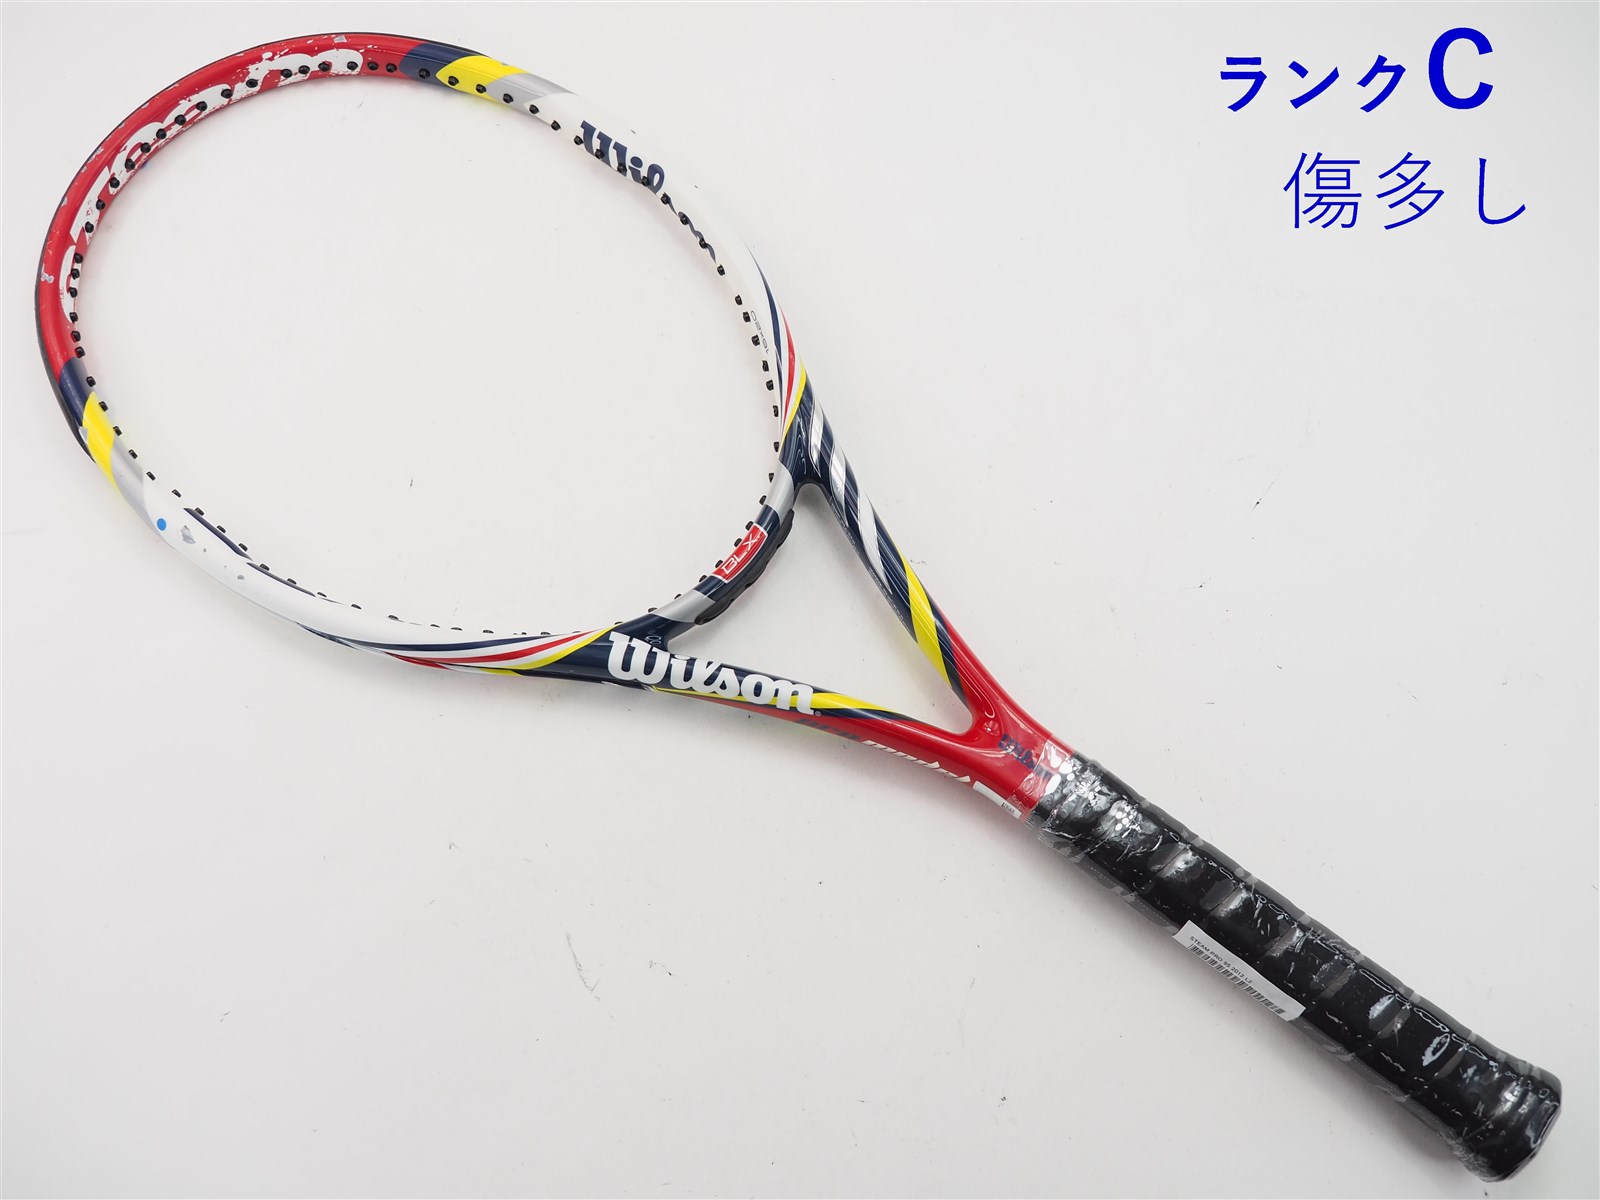 テニスラケット ウィルソン スティーム プロ 95 2012年モデル (L2